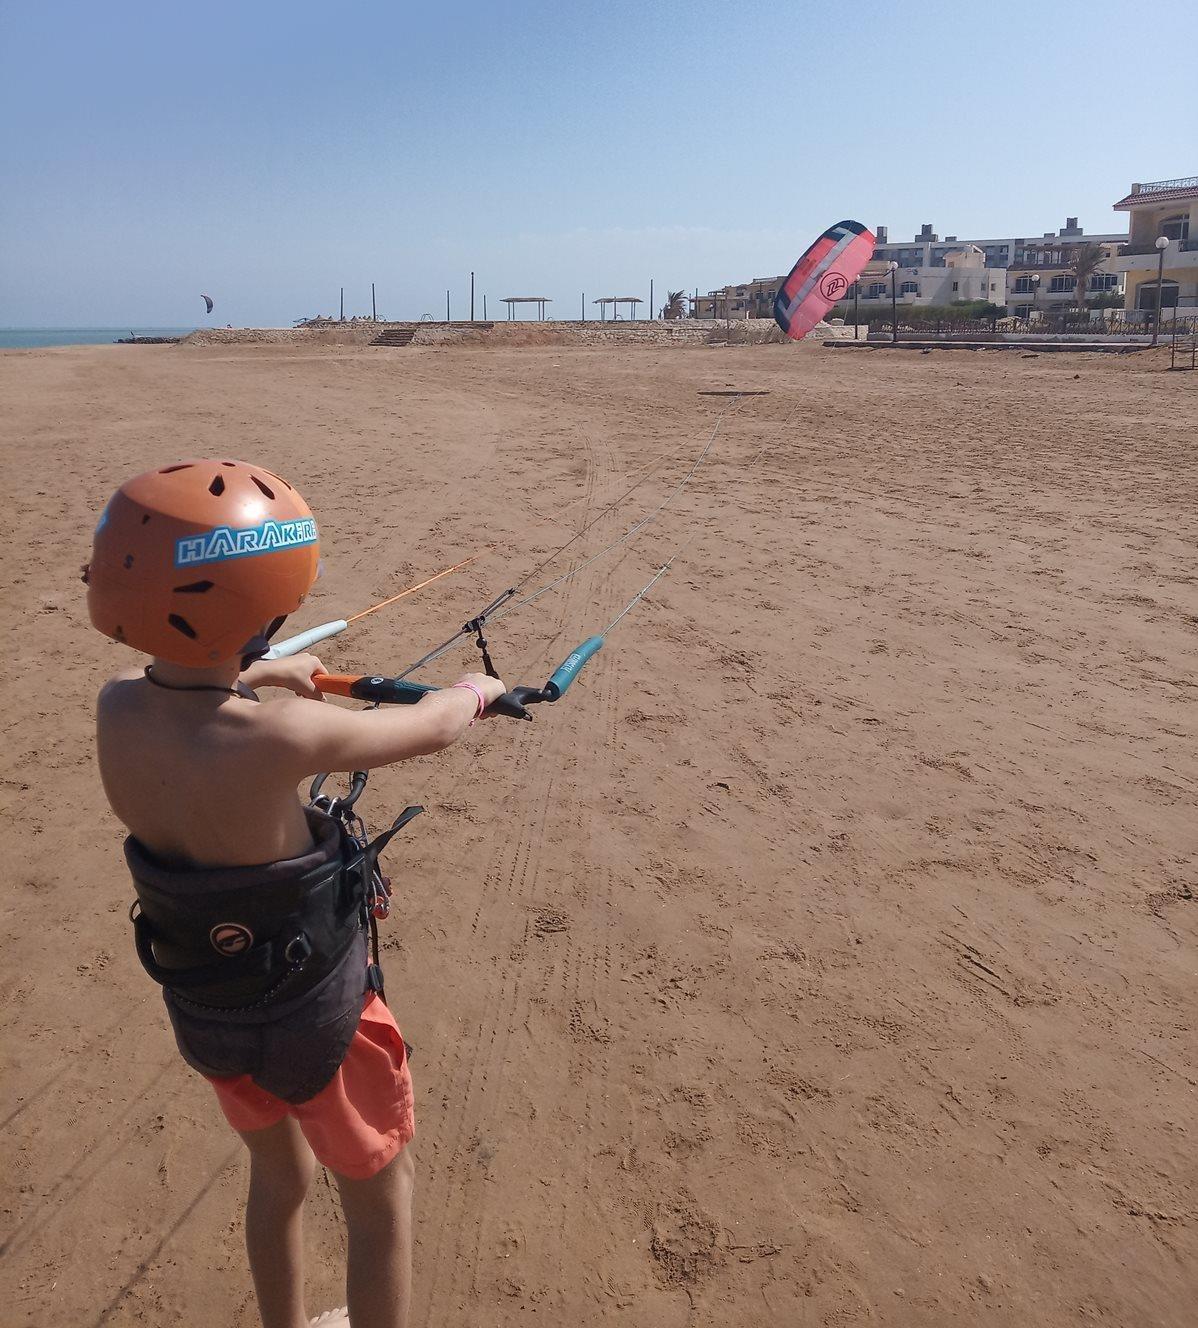 Kite Flysurfer Hybrid recenze - první den na pláží